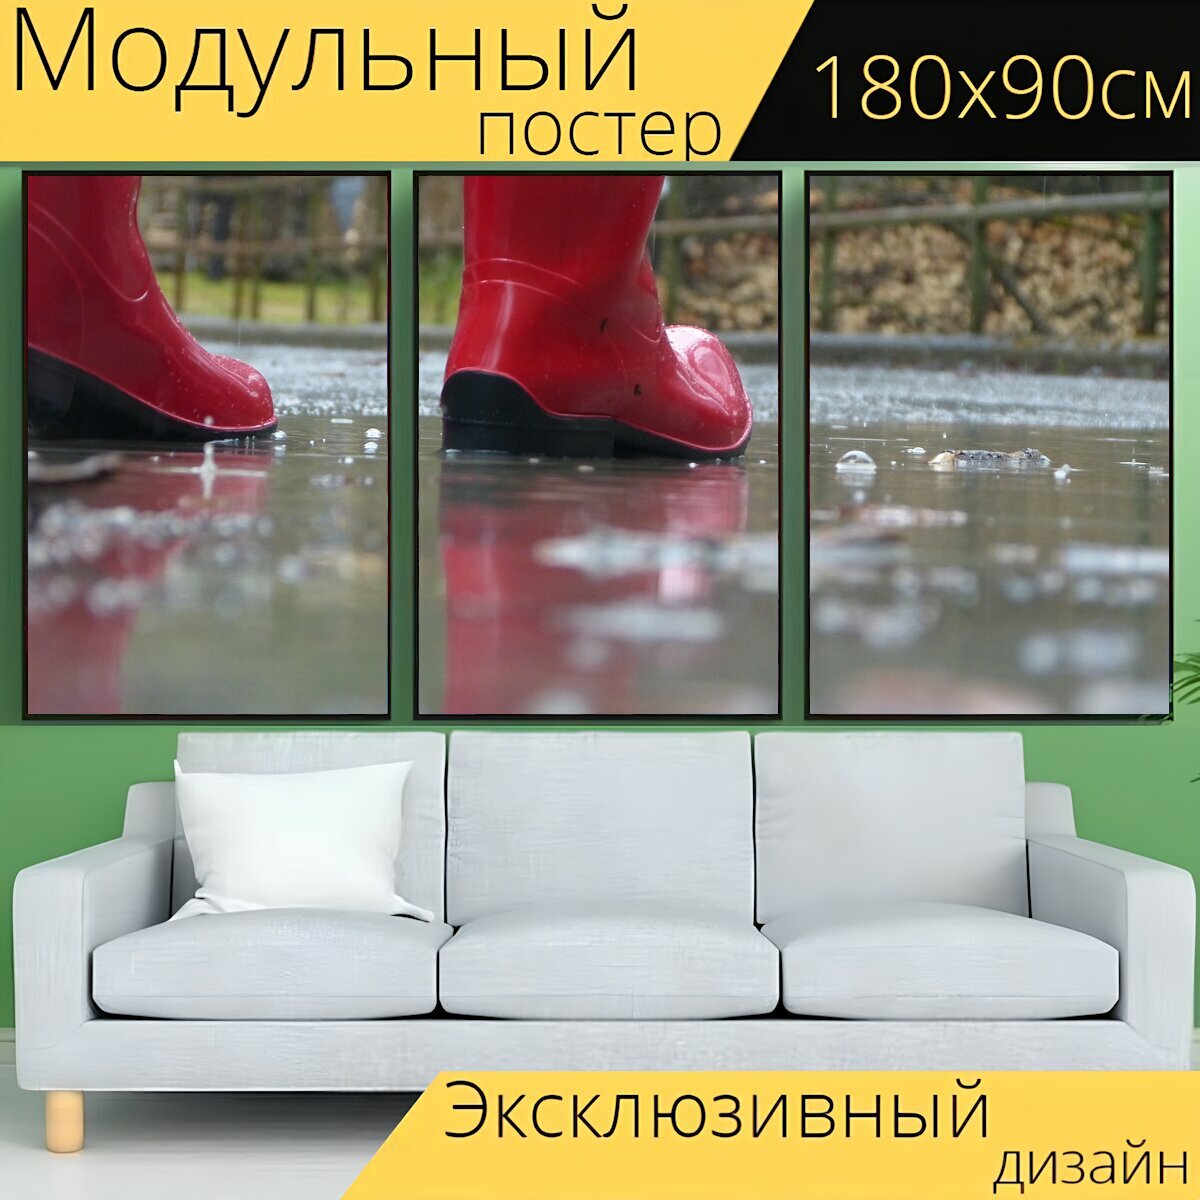 Модульный постер "Красные сапоги, капля дождя, резиновые сапоги" 180 x 90 см. для интерьера